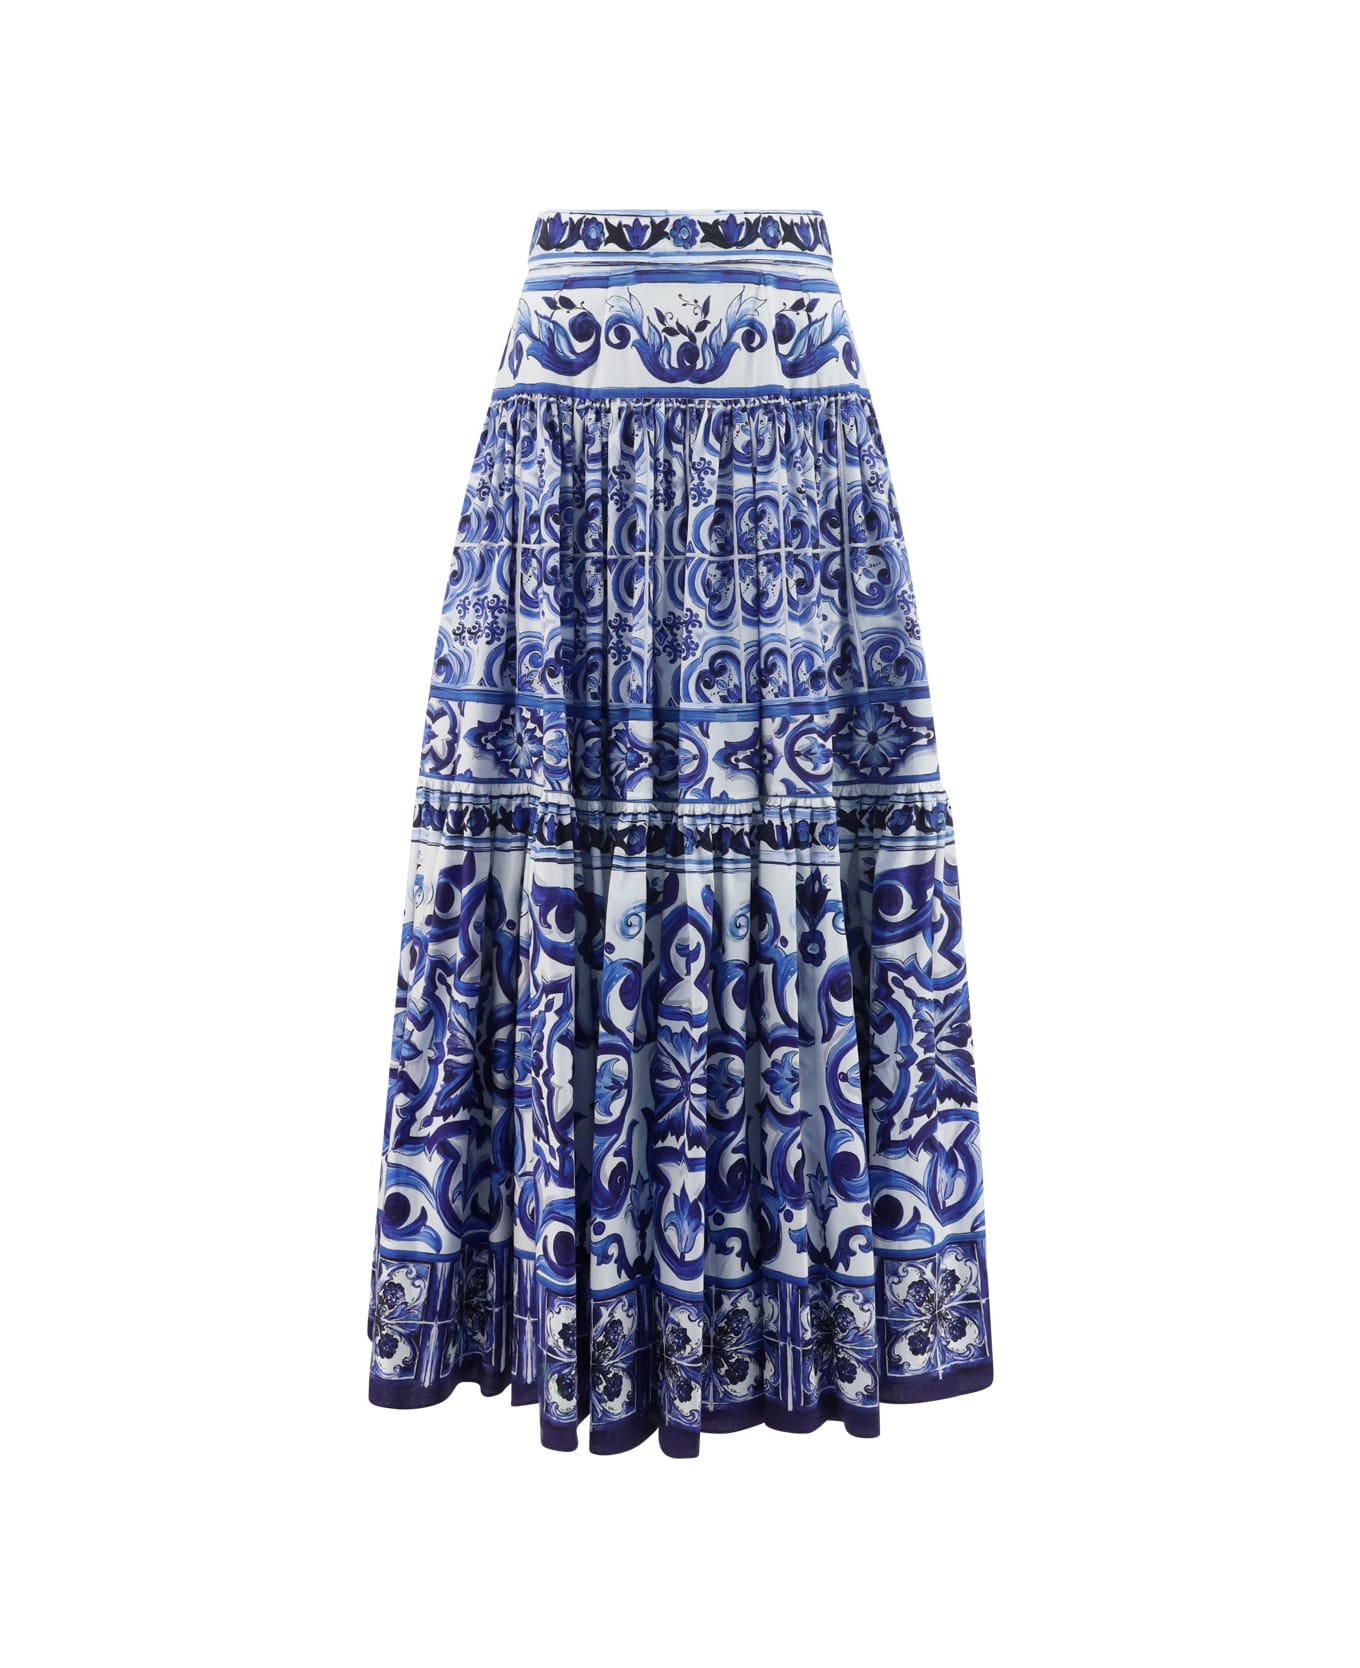 Dolce & Gabbana Skirt - Tn Blu/bco